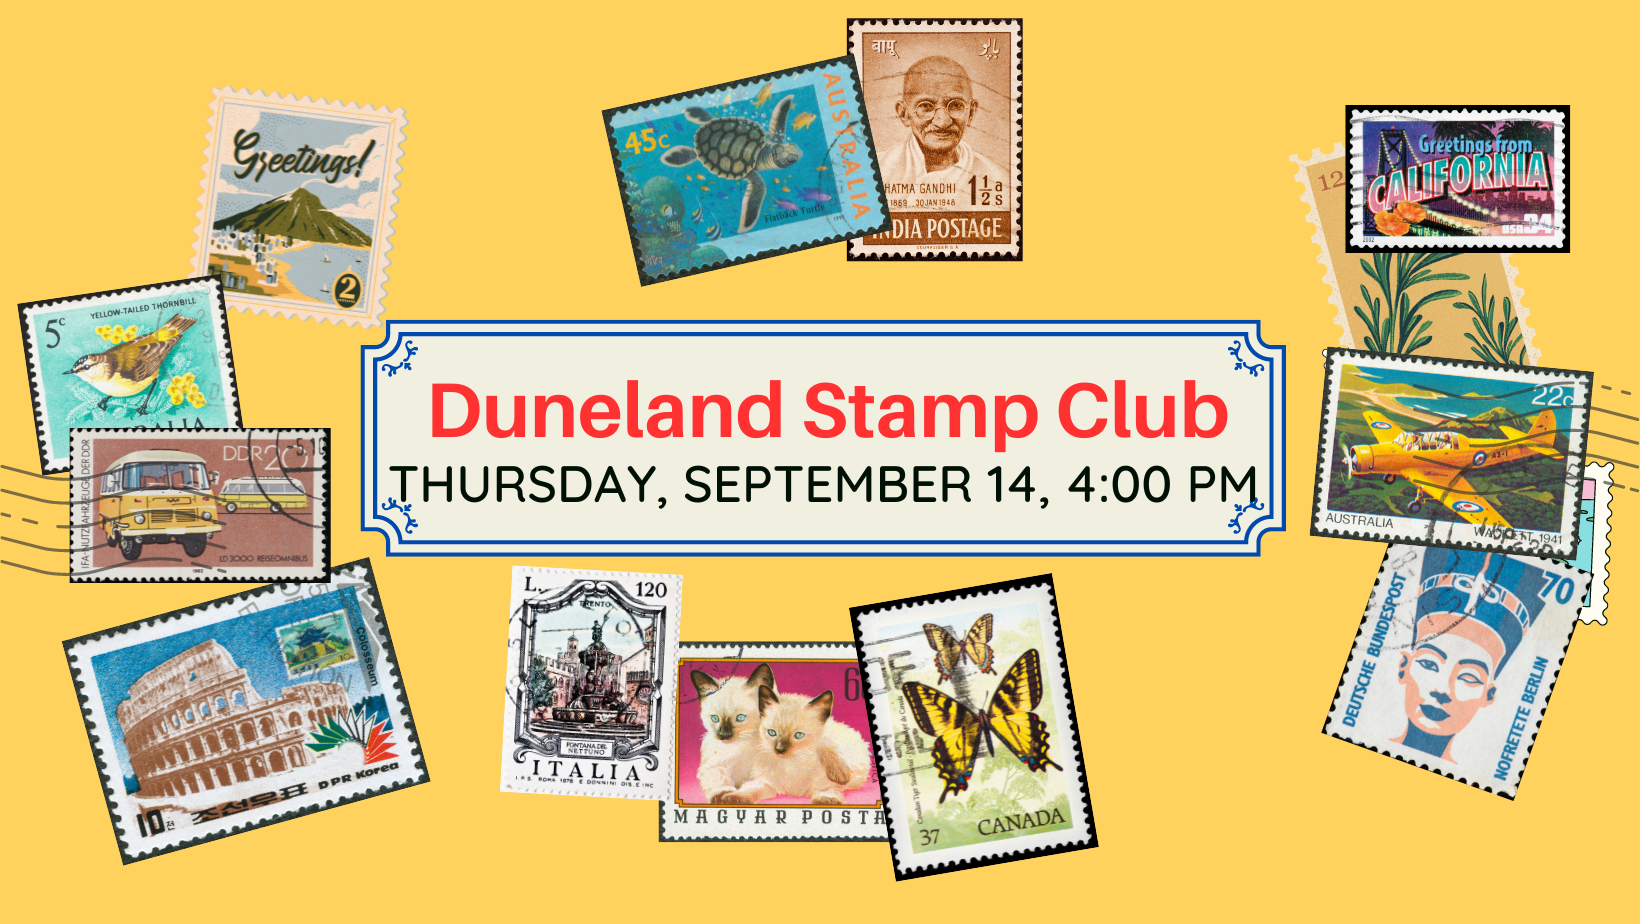 Duneland Stamp Club, Thursday, September 14, 4:00 pm